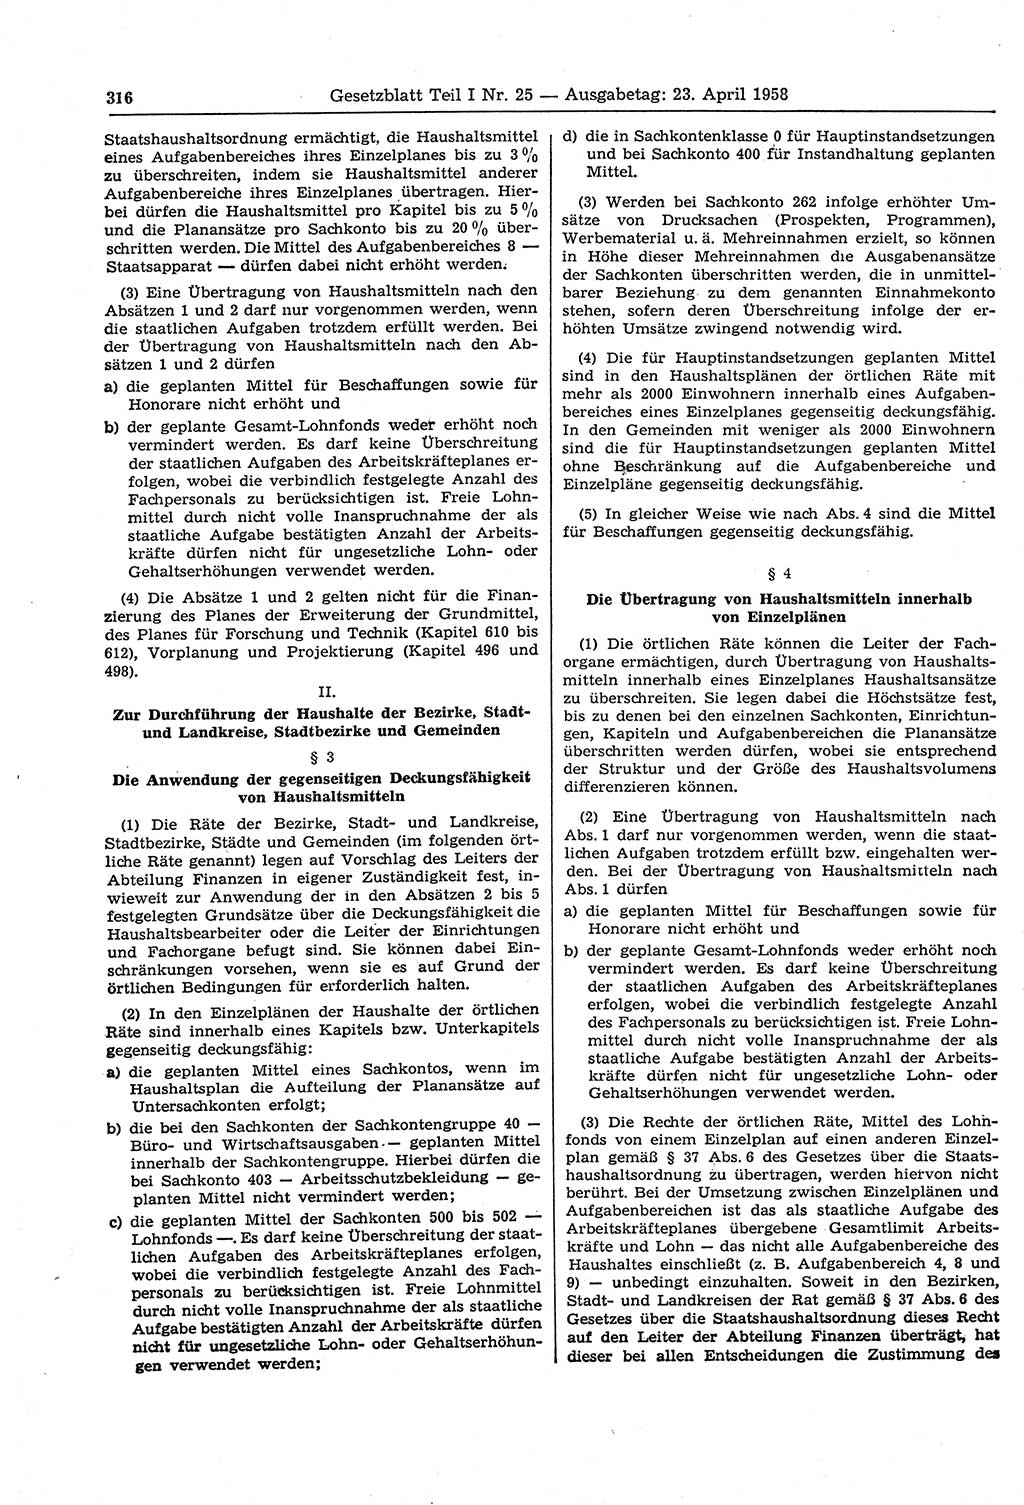 Gesetzblatt (GBl.) der Deutschen Demokratischen Republik (DDR) Teil Ⅰ 1958, Seite 316 (GBl. DDR Ⅰ 1958, S. 316)